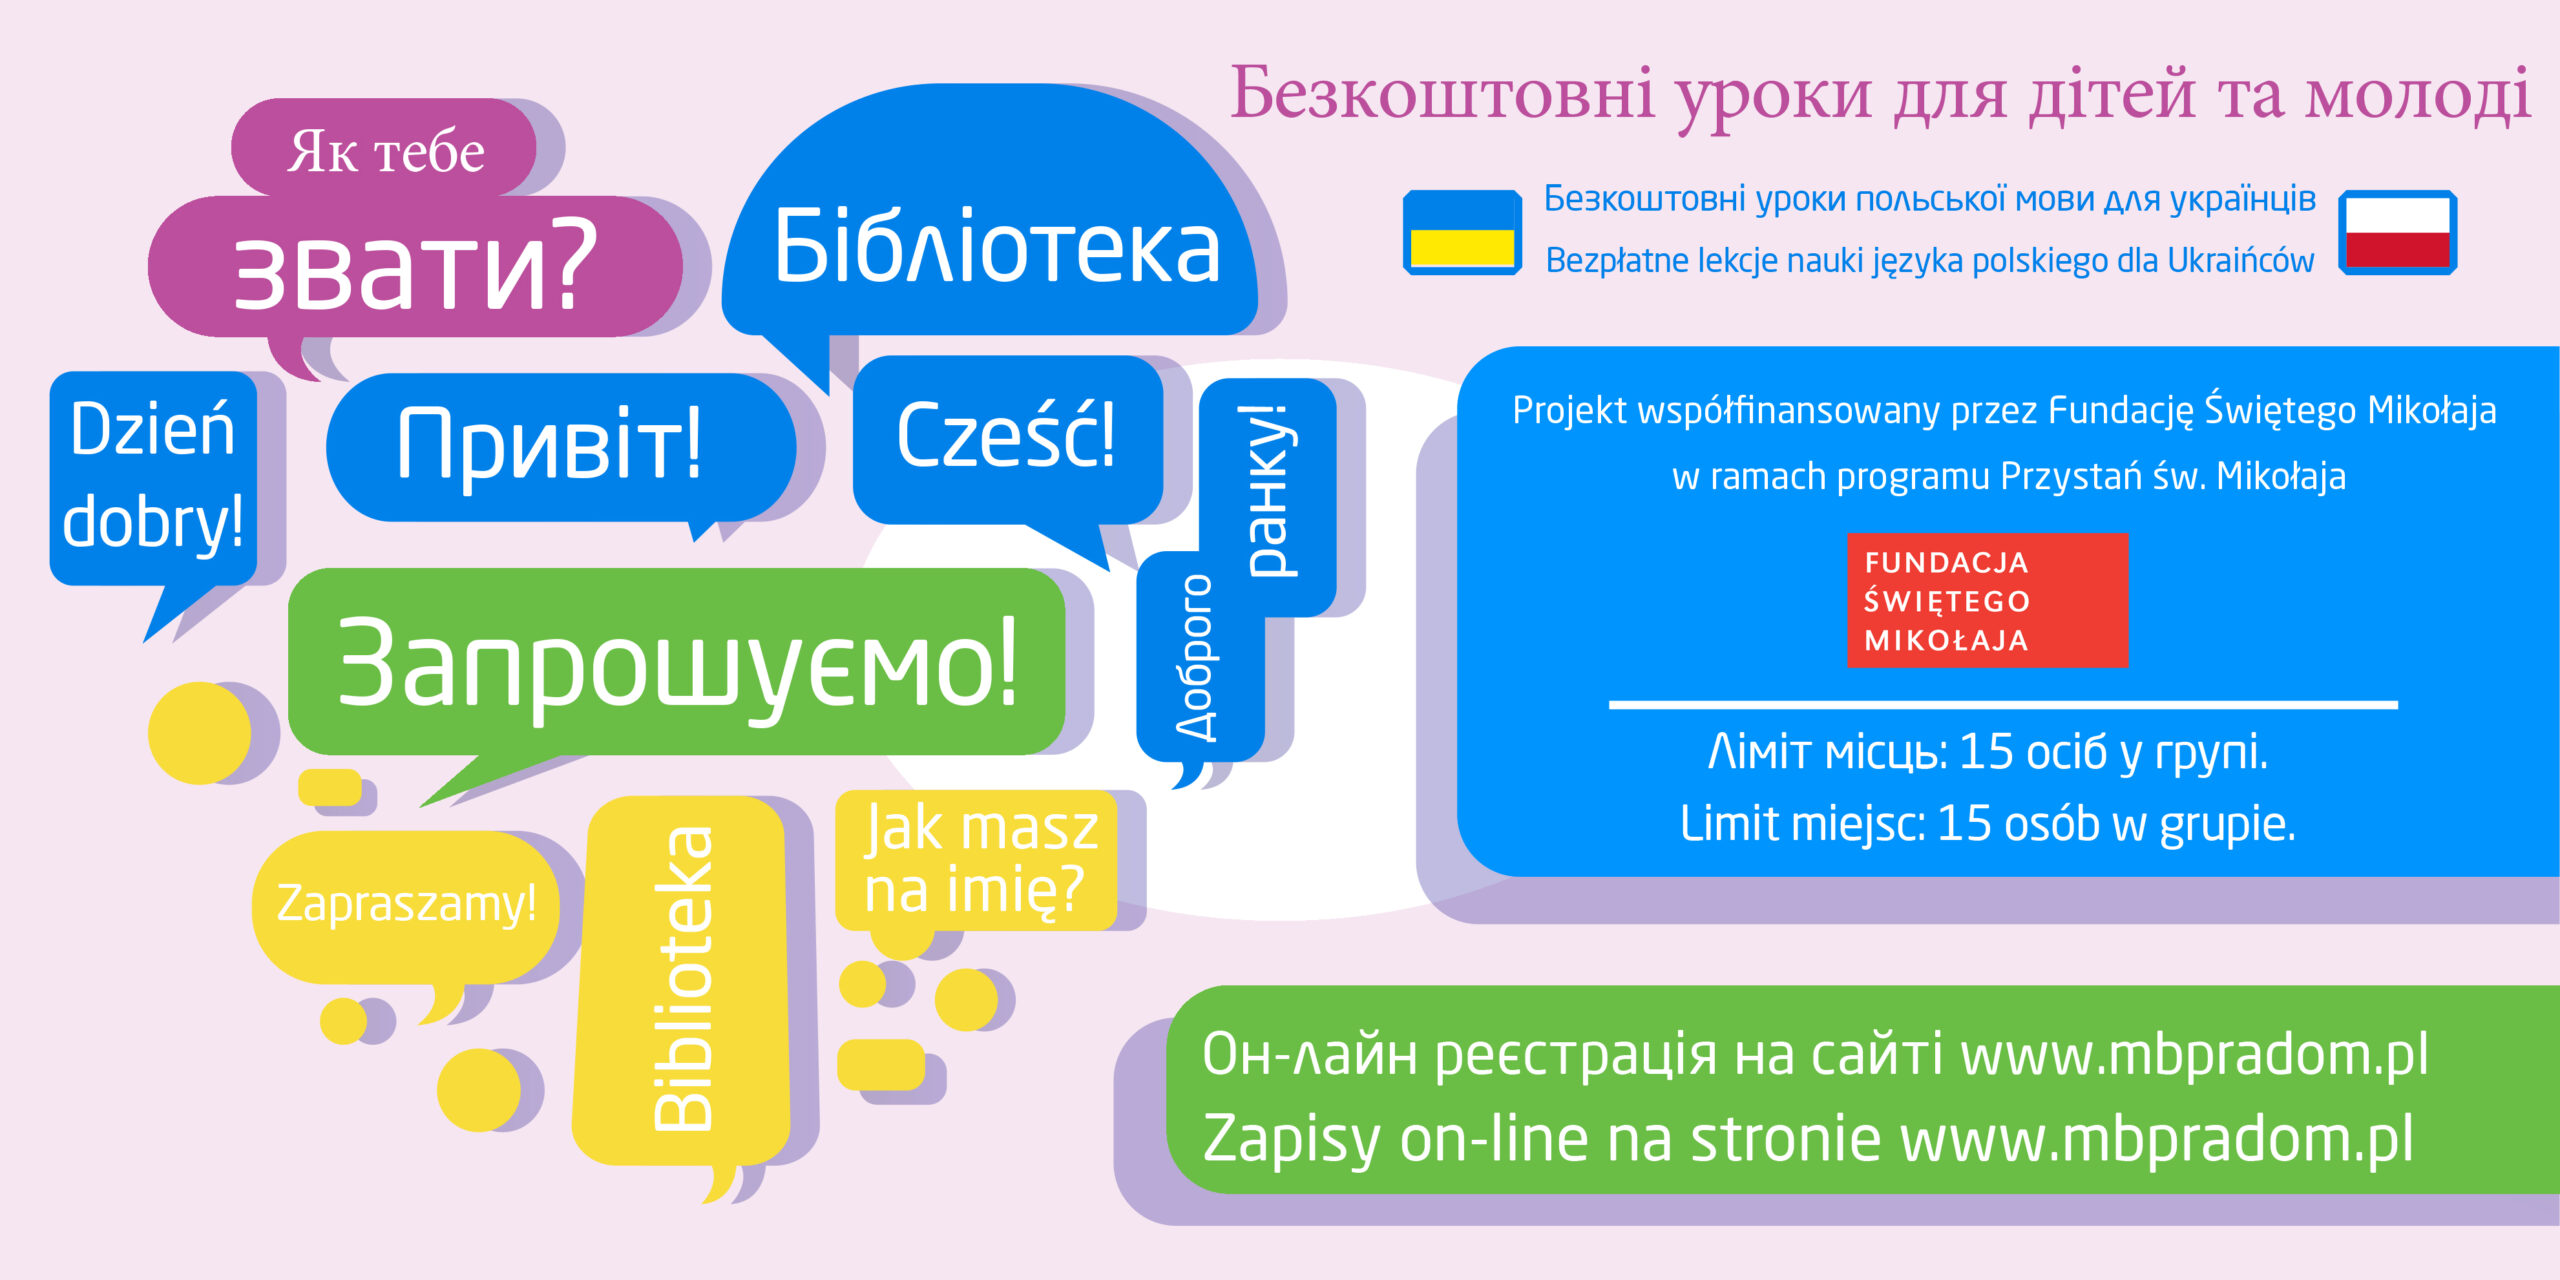 Nabór na lekcje języka polskiego dzieci grupa 1 i 2